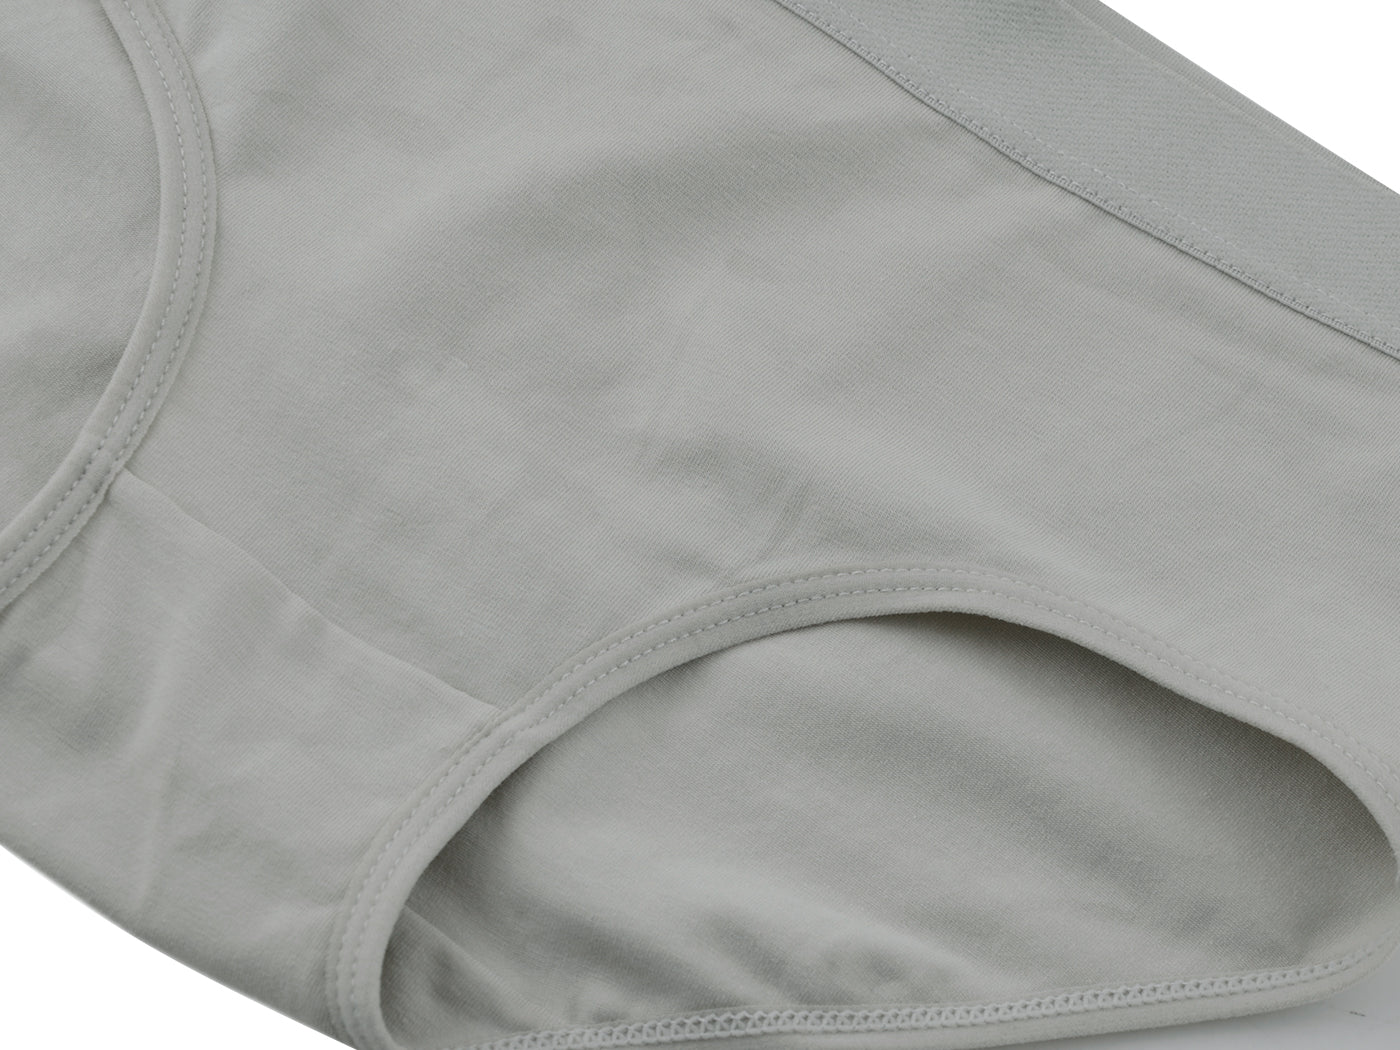 Stretch Cotton Soft Underwear Briefs Panties-1 Pack